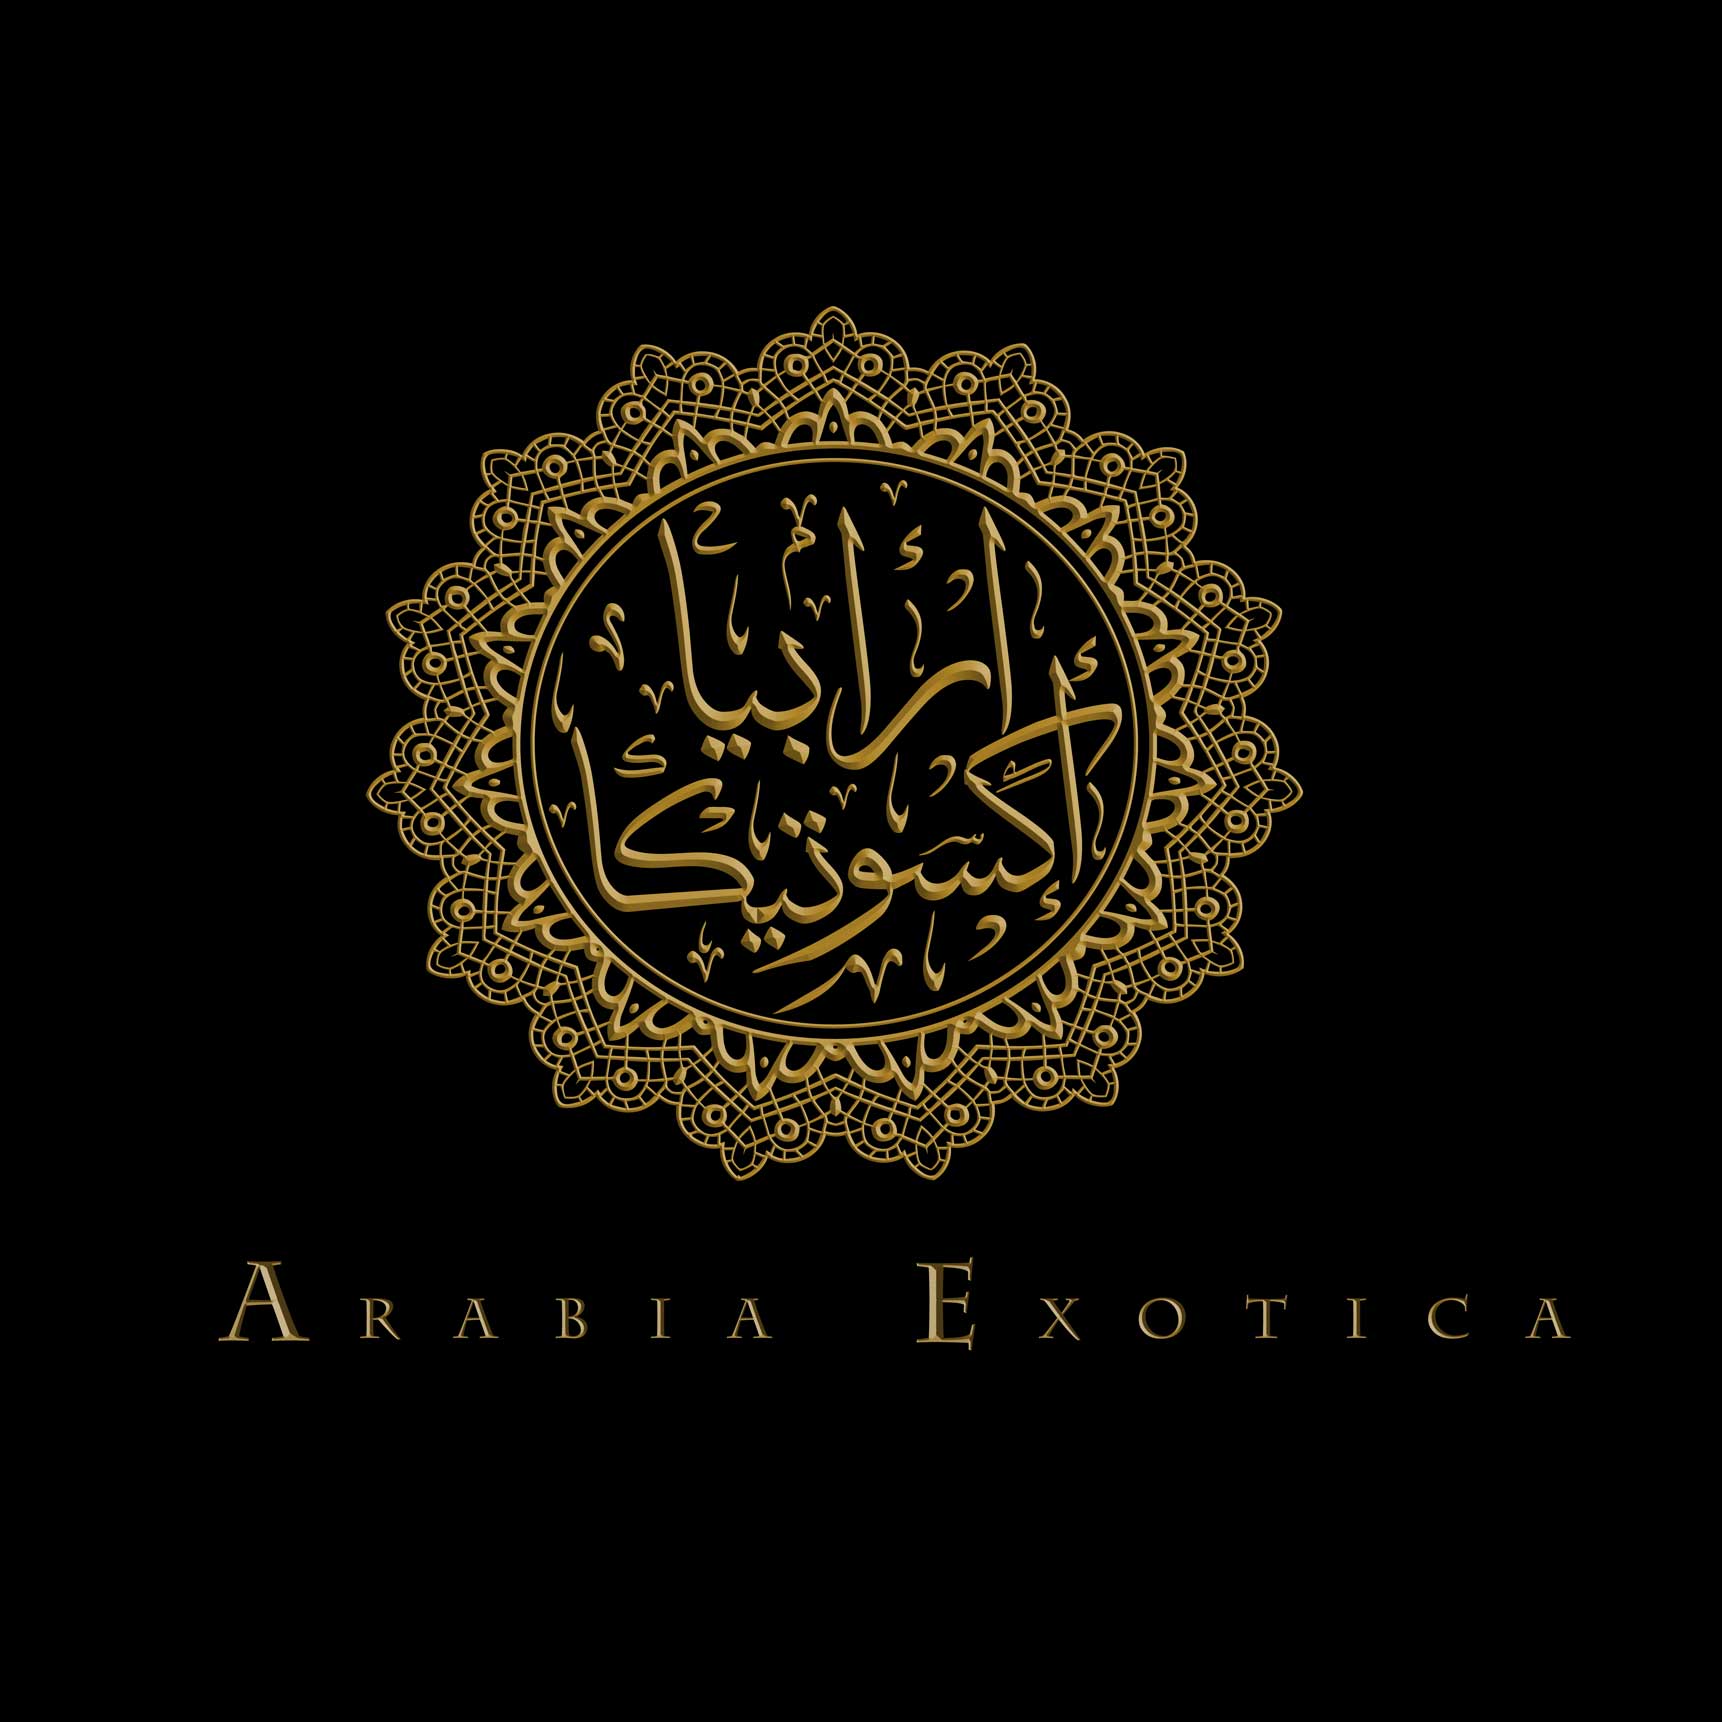 David Ghazawy's Arabia Exotica